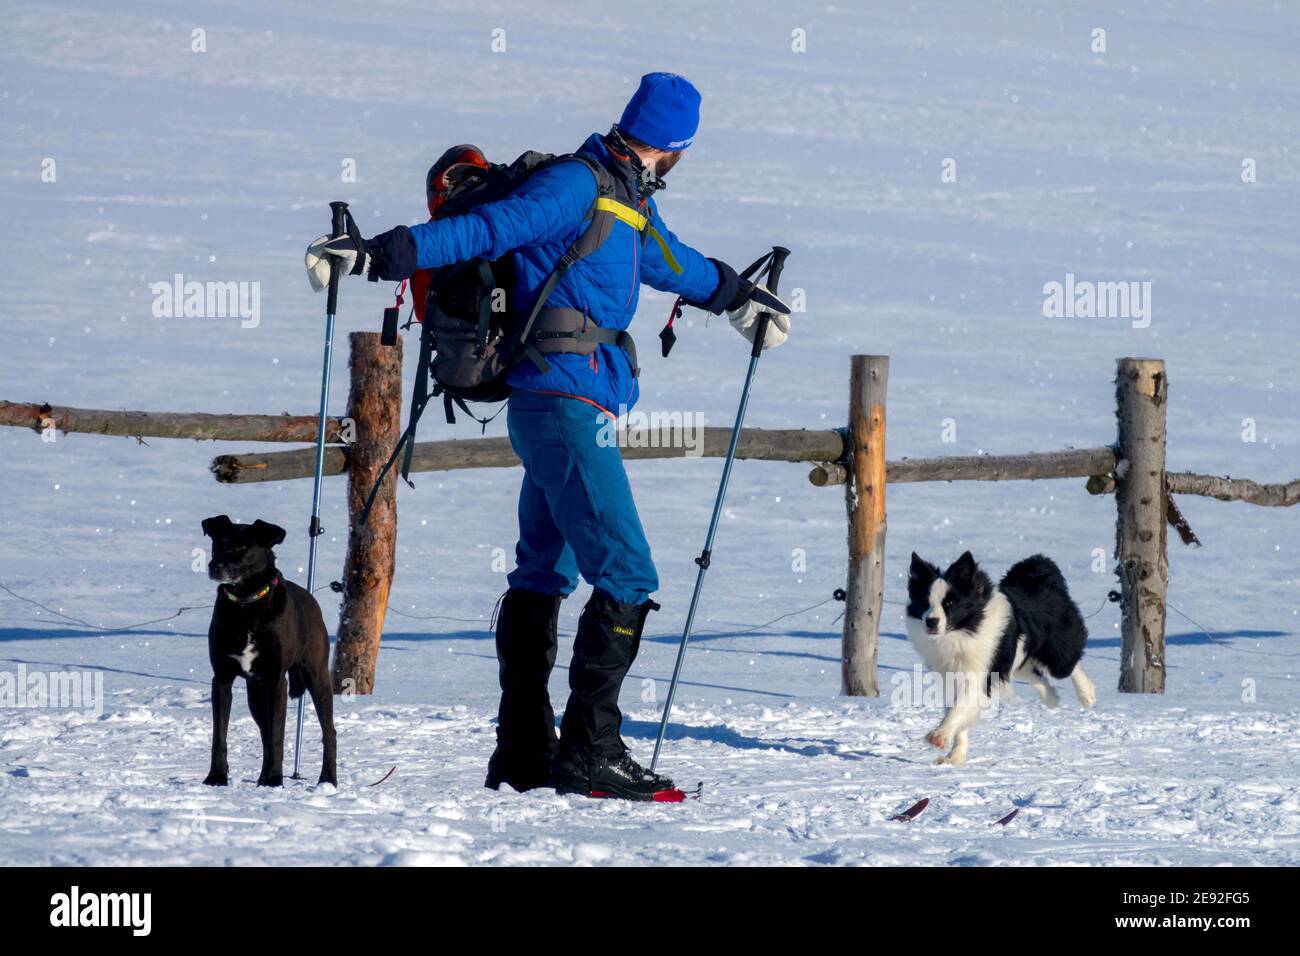 Homme ski de fond avec deux chiens sur la neige Banque D'Images